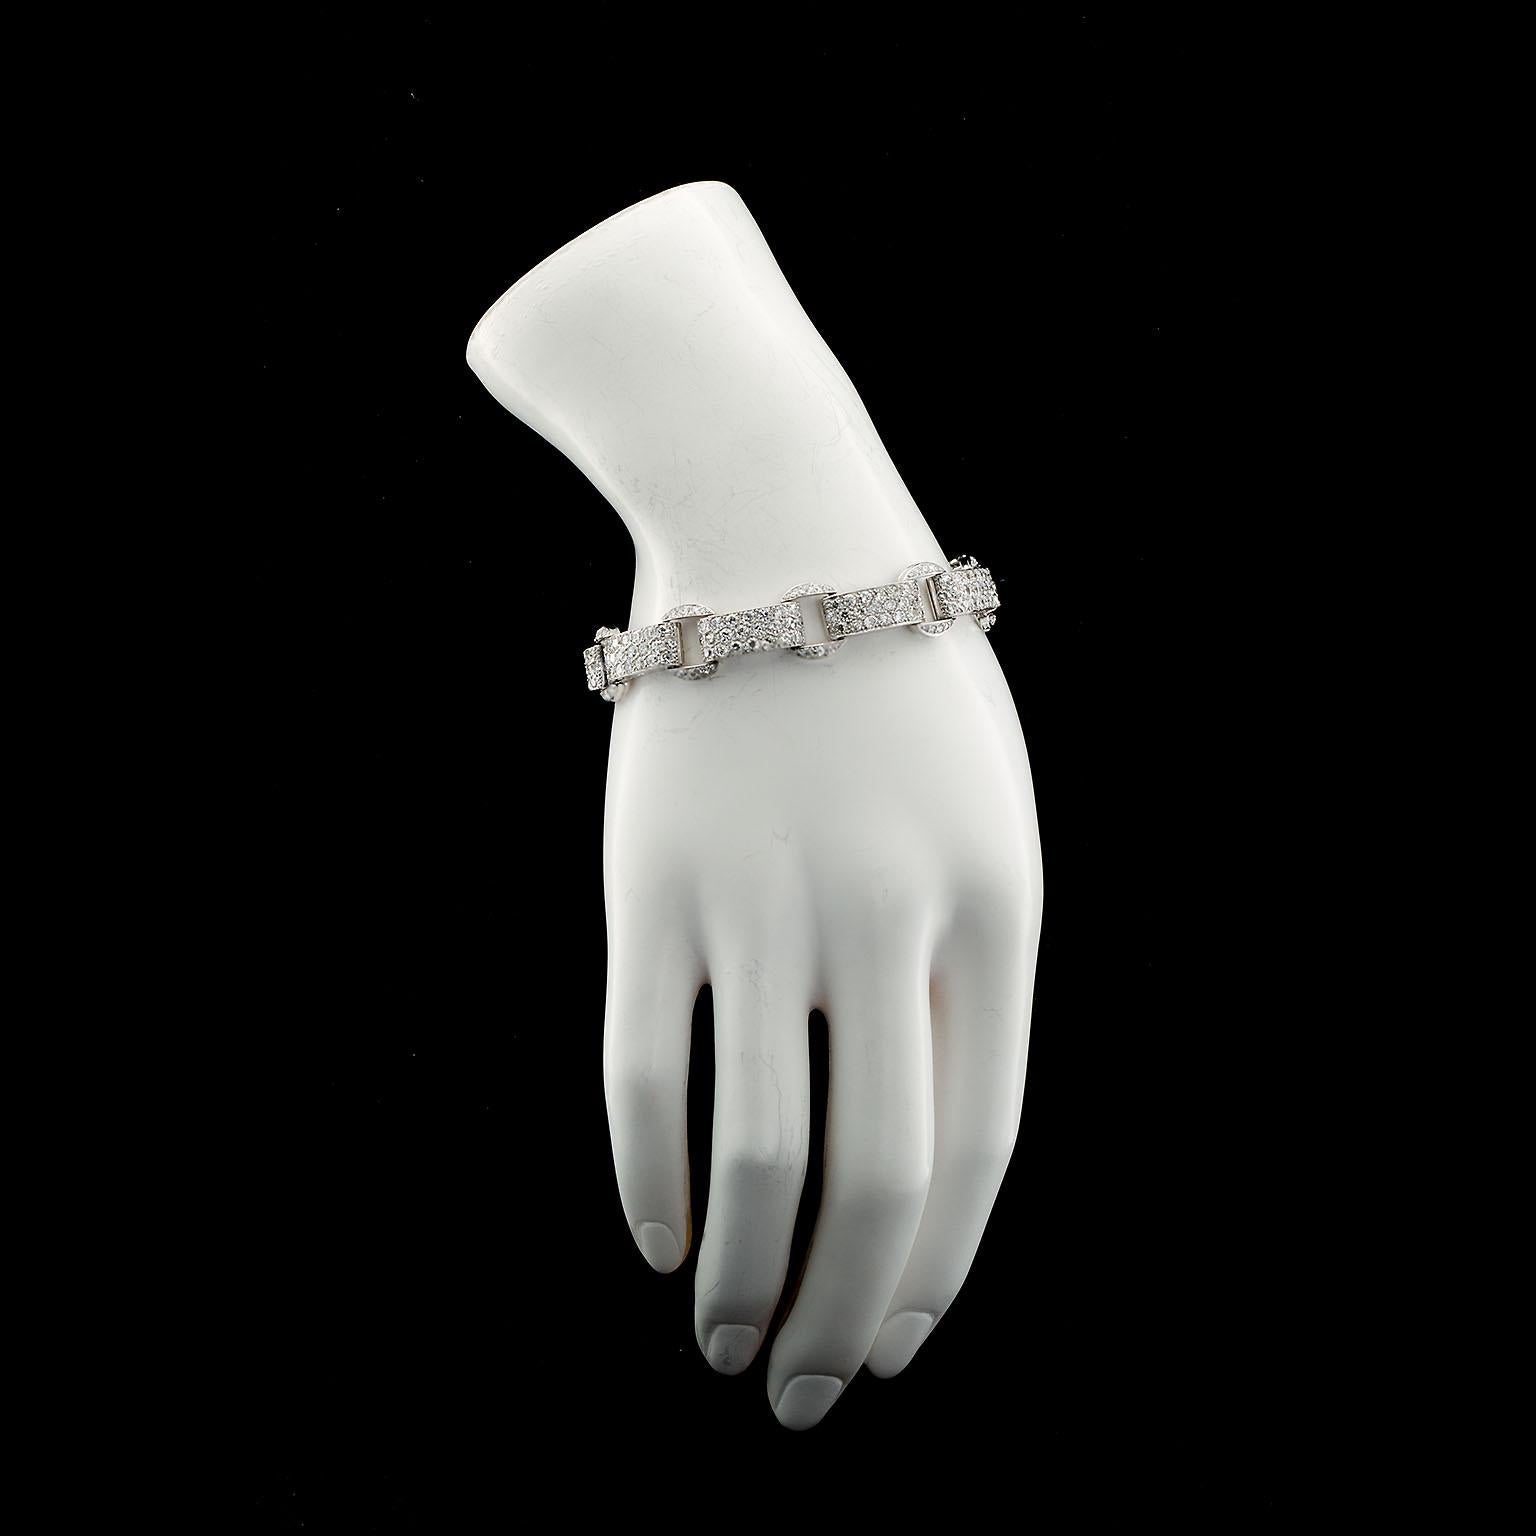 Ein originales, exquisites Armband mit neun Gliedern aus Platin und Diamanten aus der Zeit des Art déco, besetzt mit ca. 18,50 ctw Diamanten in Collection-Qualität im perfekten Pavé-Stil. Die Diamanten sind eine Mischung aus Old European und